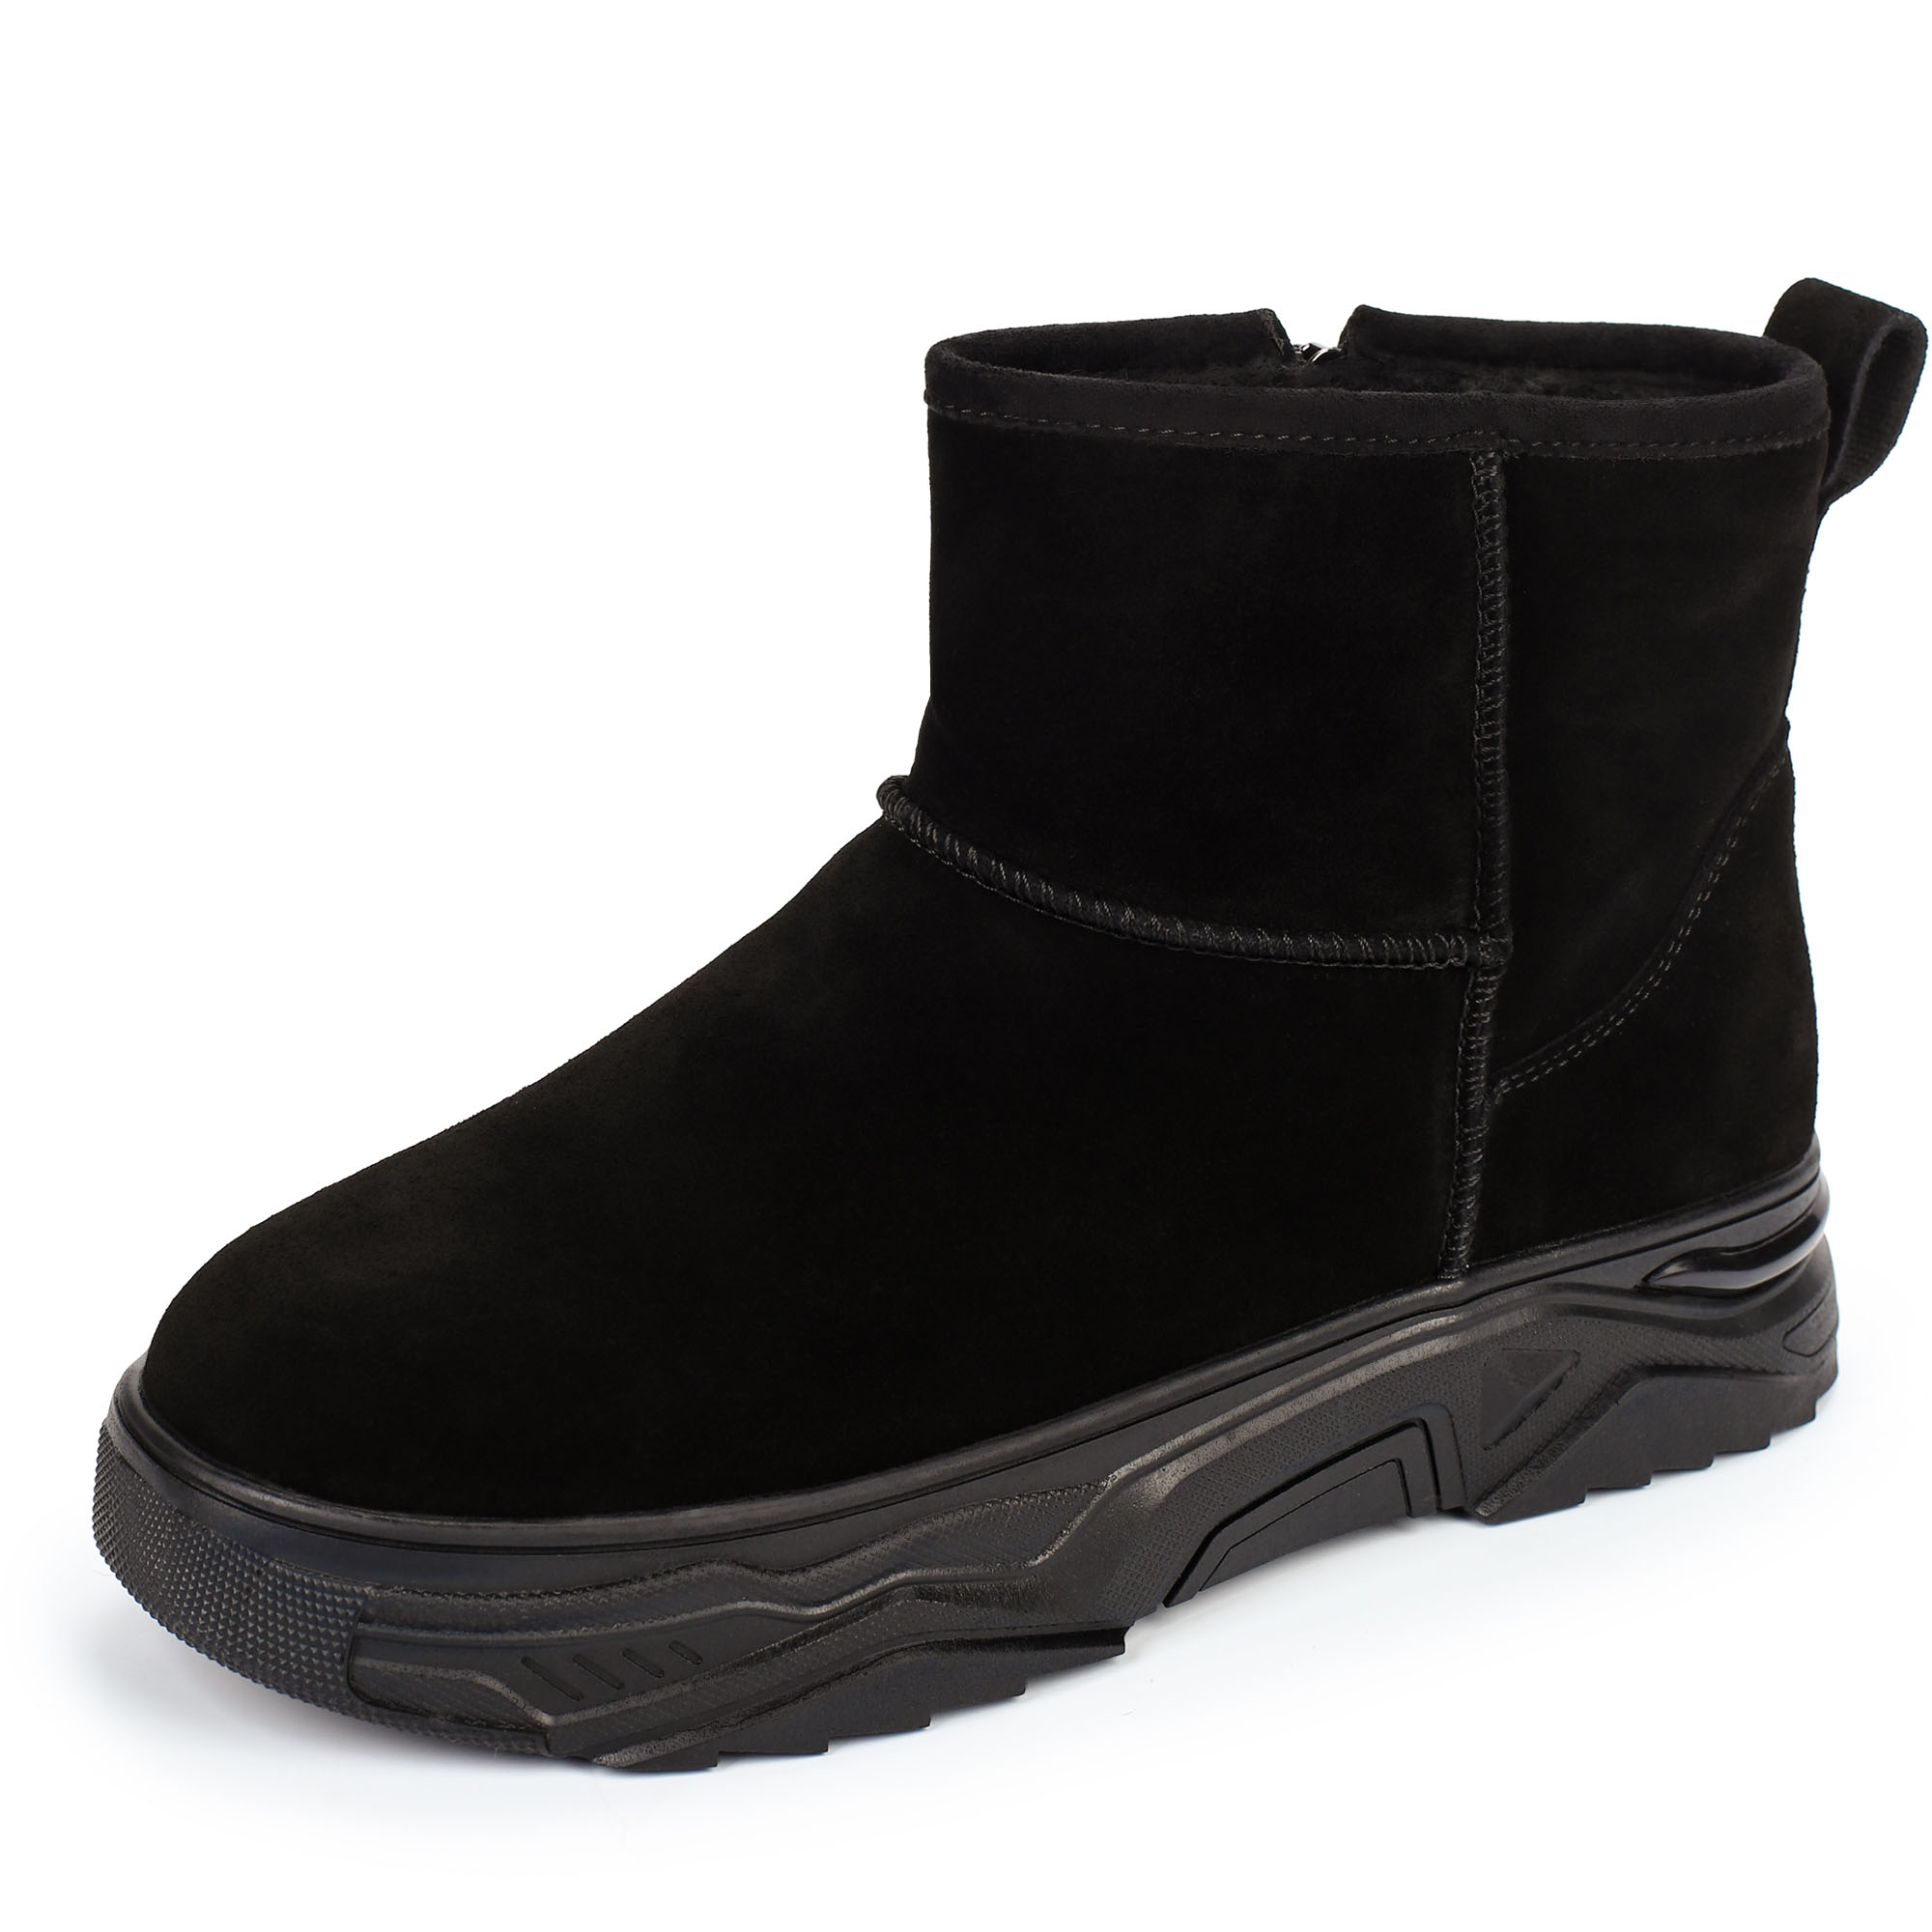 Ботинки Thomas Munz 234-445A-50202, цвет черный, размер 40 - фото 2